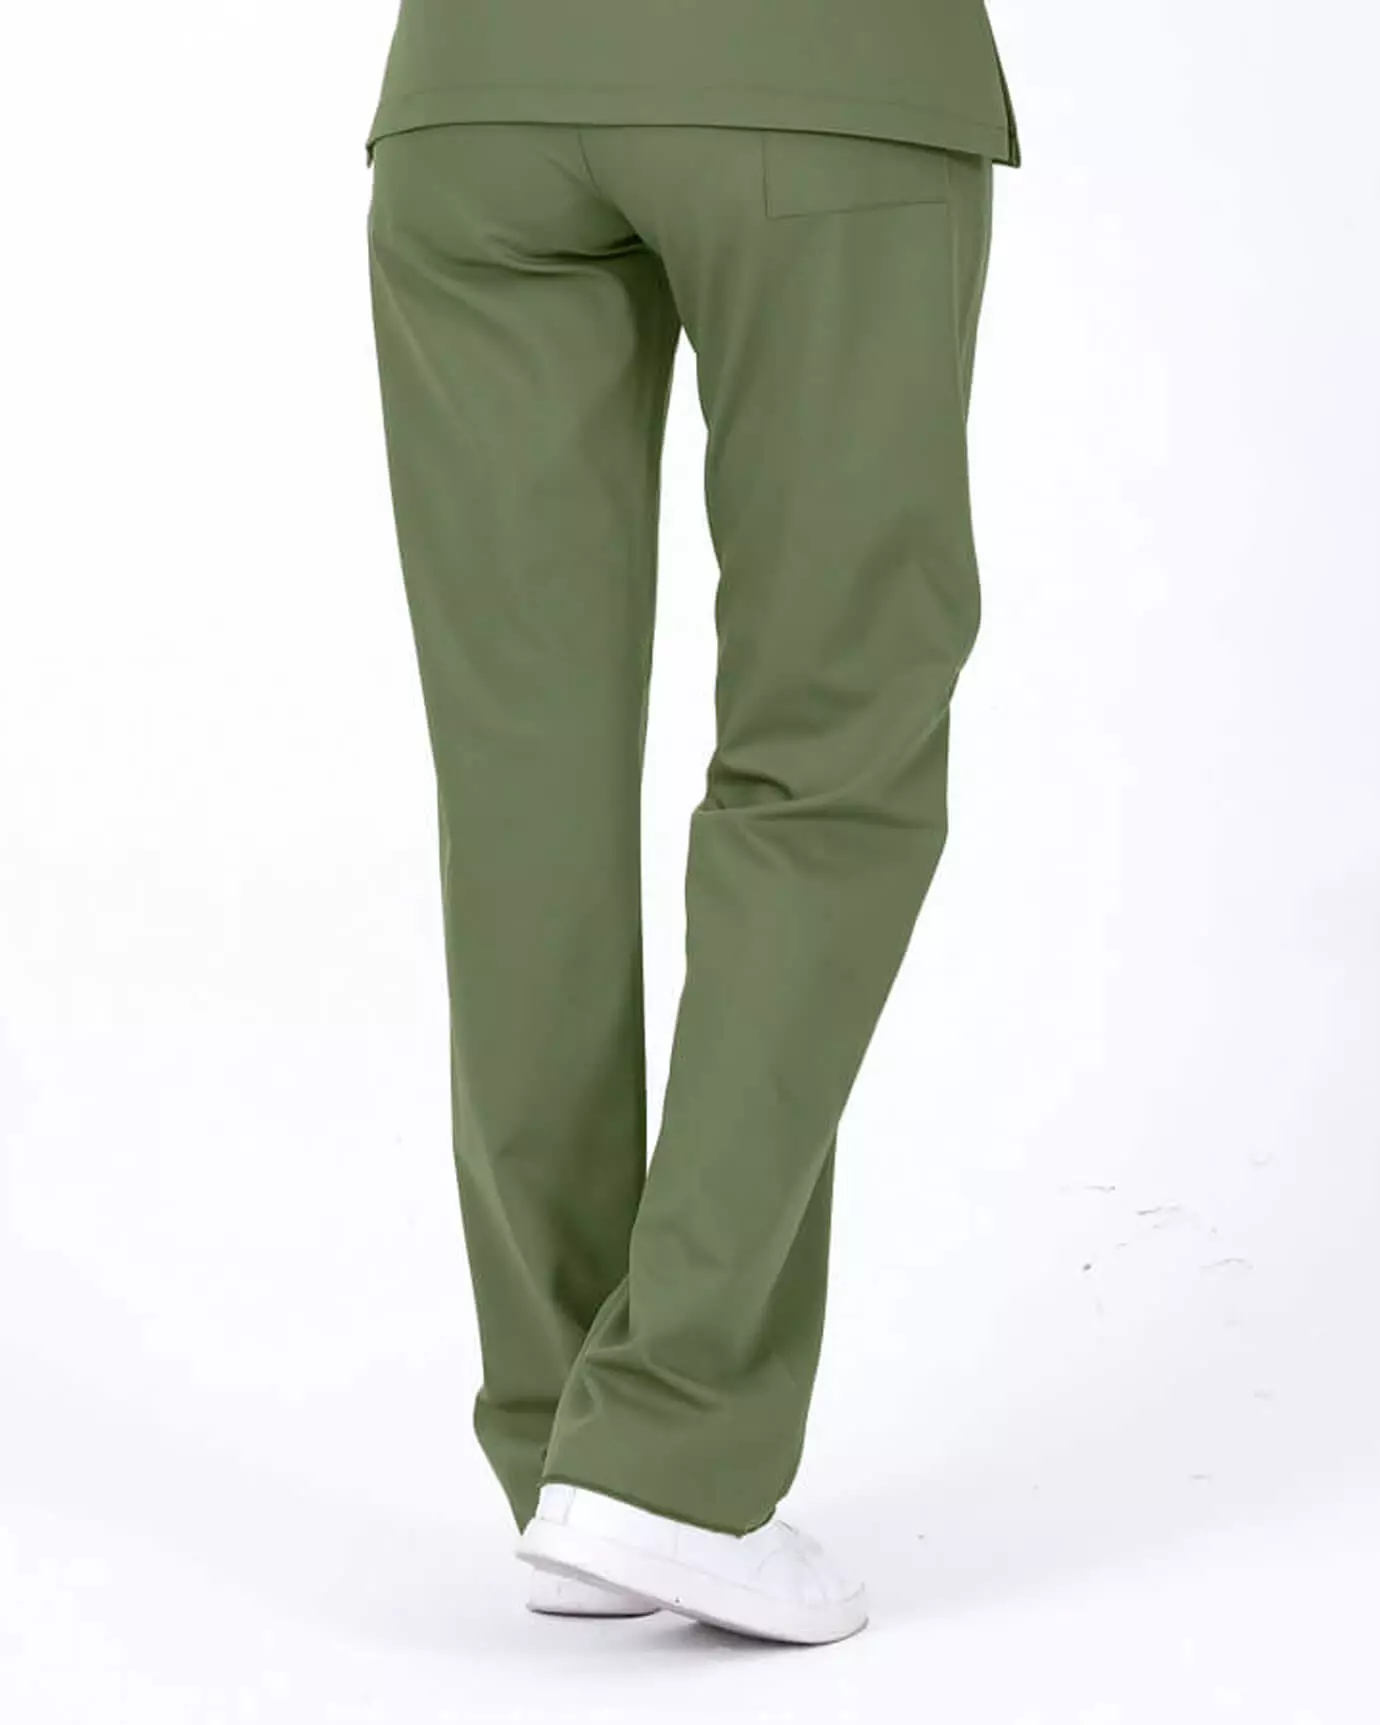 Kadın Hemşire Forması Premium Mint Yeşili Pantolon